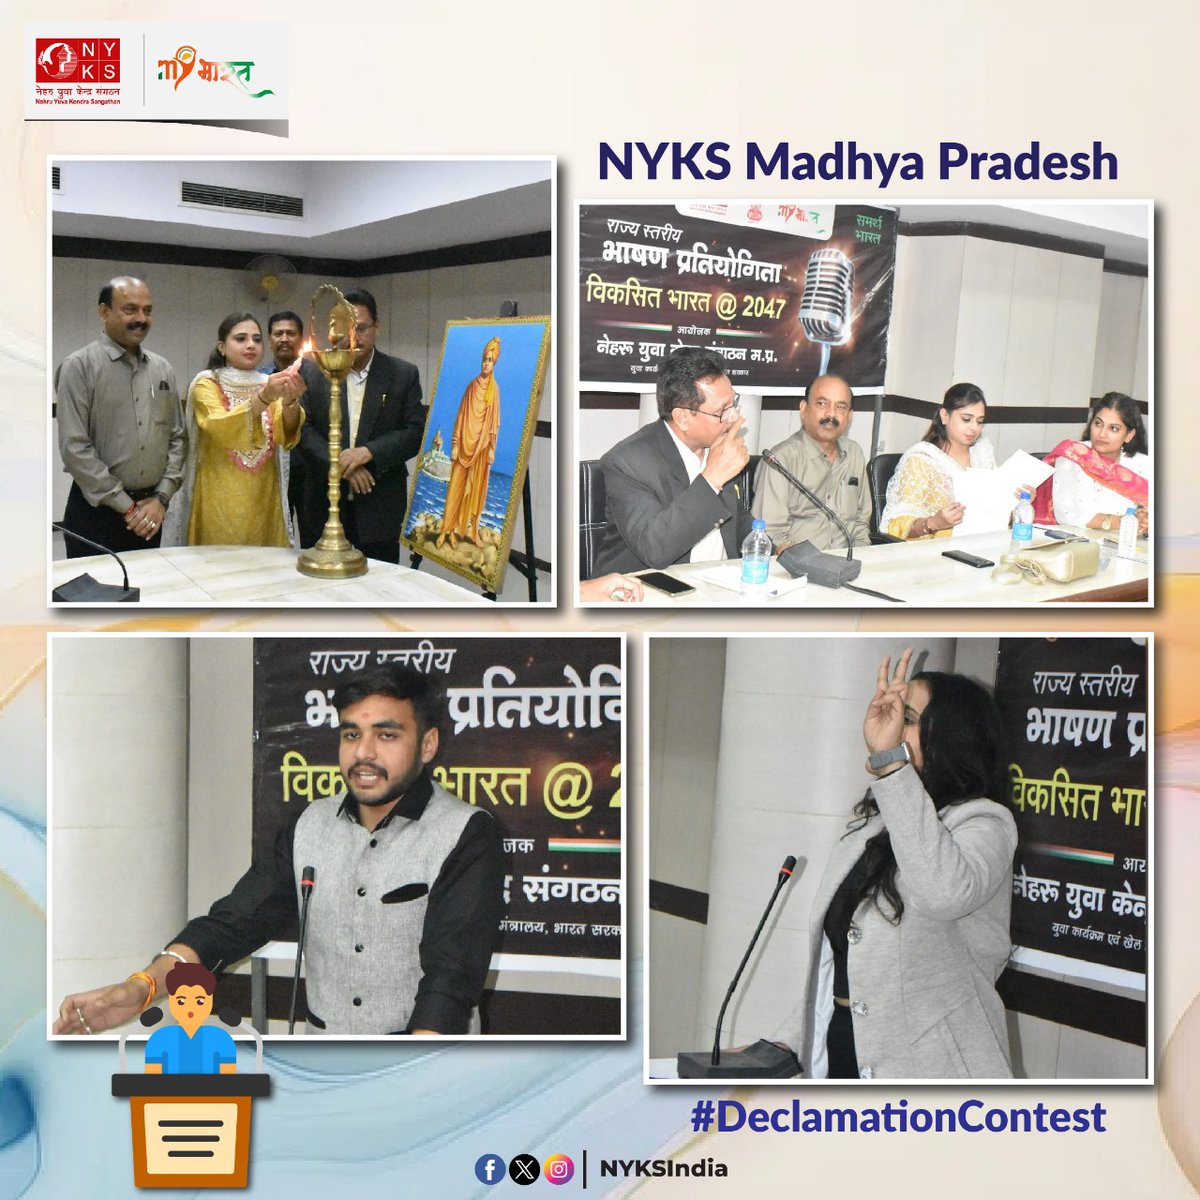 नेहरू युवा केंद्र संगठन, मध्यप्रदेश द्वारा माय भारत: विकसित भारत@ 2047 विषय पर राज्य स्तरीय भाषण प्रतियोगिता का आयोजन भोपाल स्थित स्वराज भवन में किया गया, जिसमें युवाओं ने इस विषय पर अपने-अपने विचार रखे। #DeclamationContest🎤 #NYKS #YouthProgramme #MadhyaPradesh